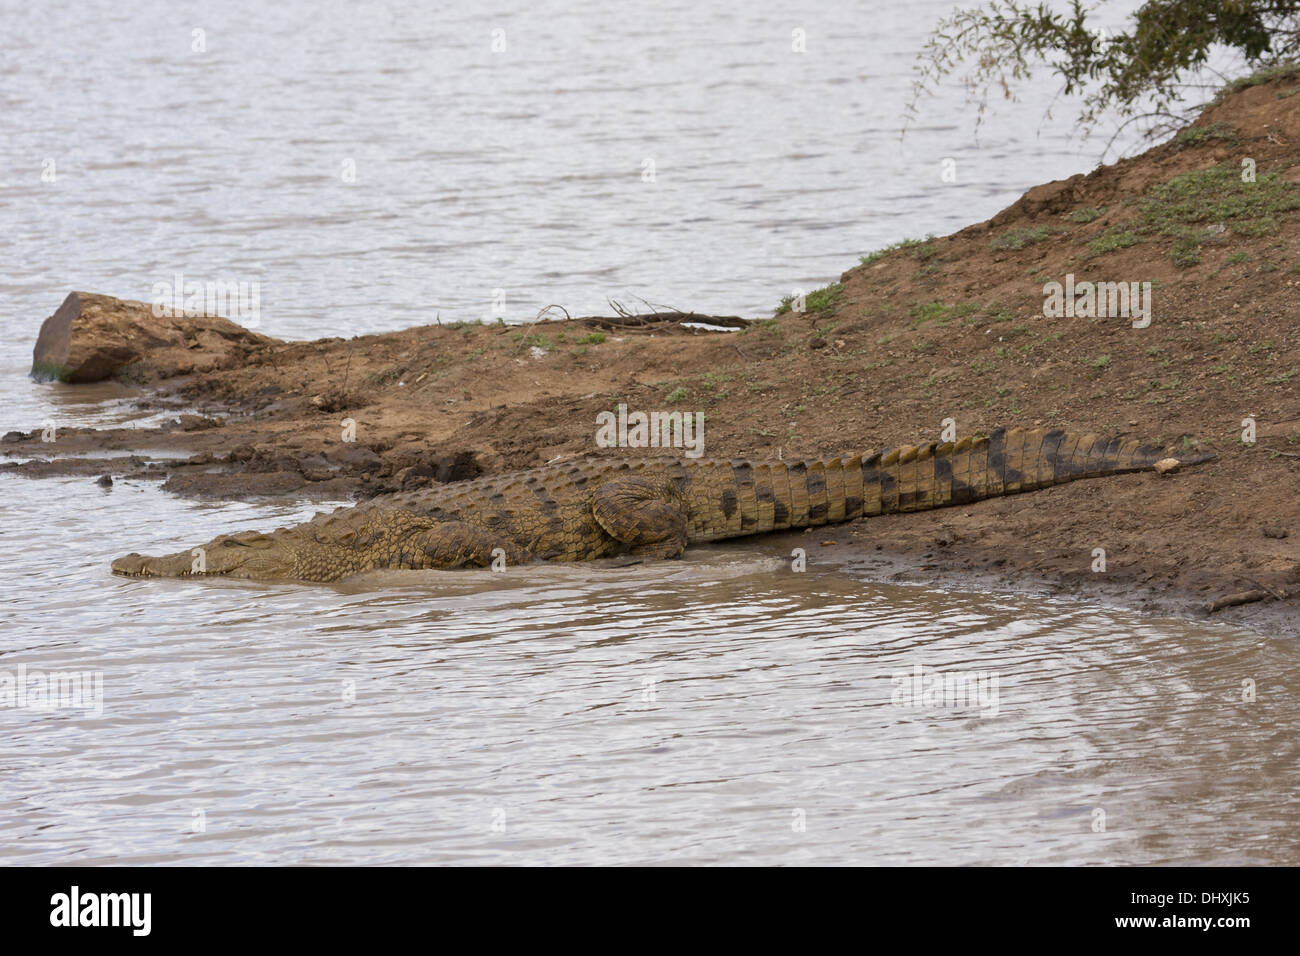 Crocodile (Crocodilia) Stock Photo